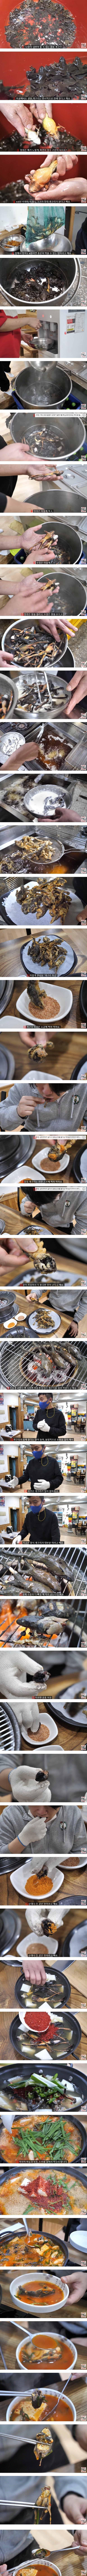 강릉 지역음식 개구리요리